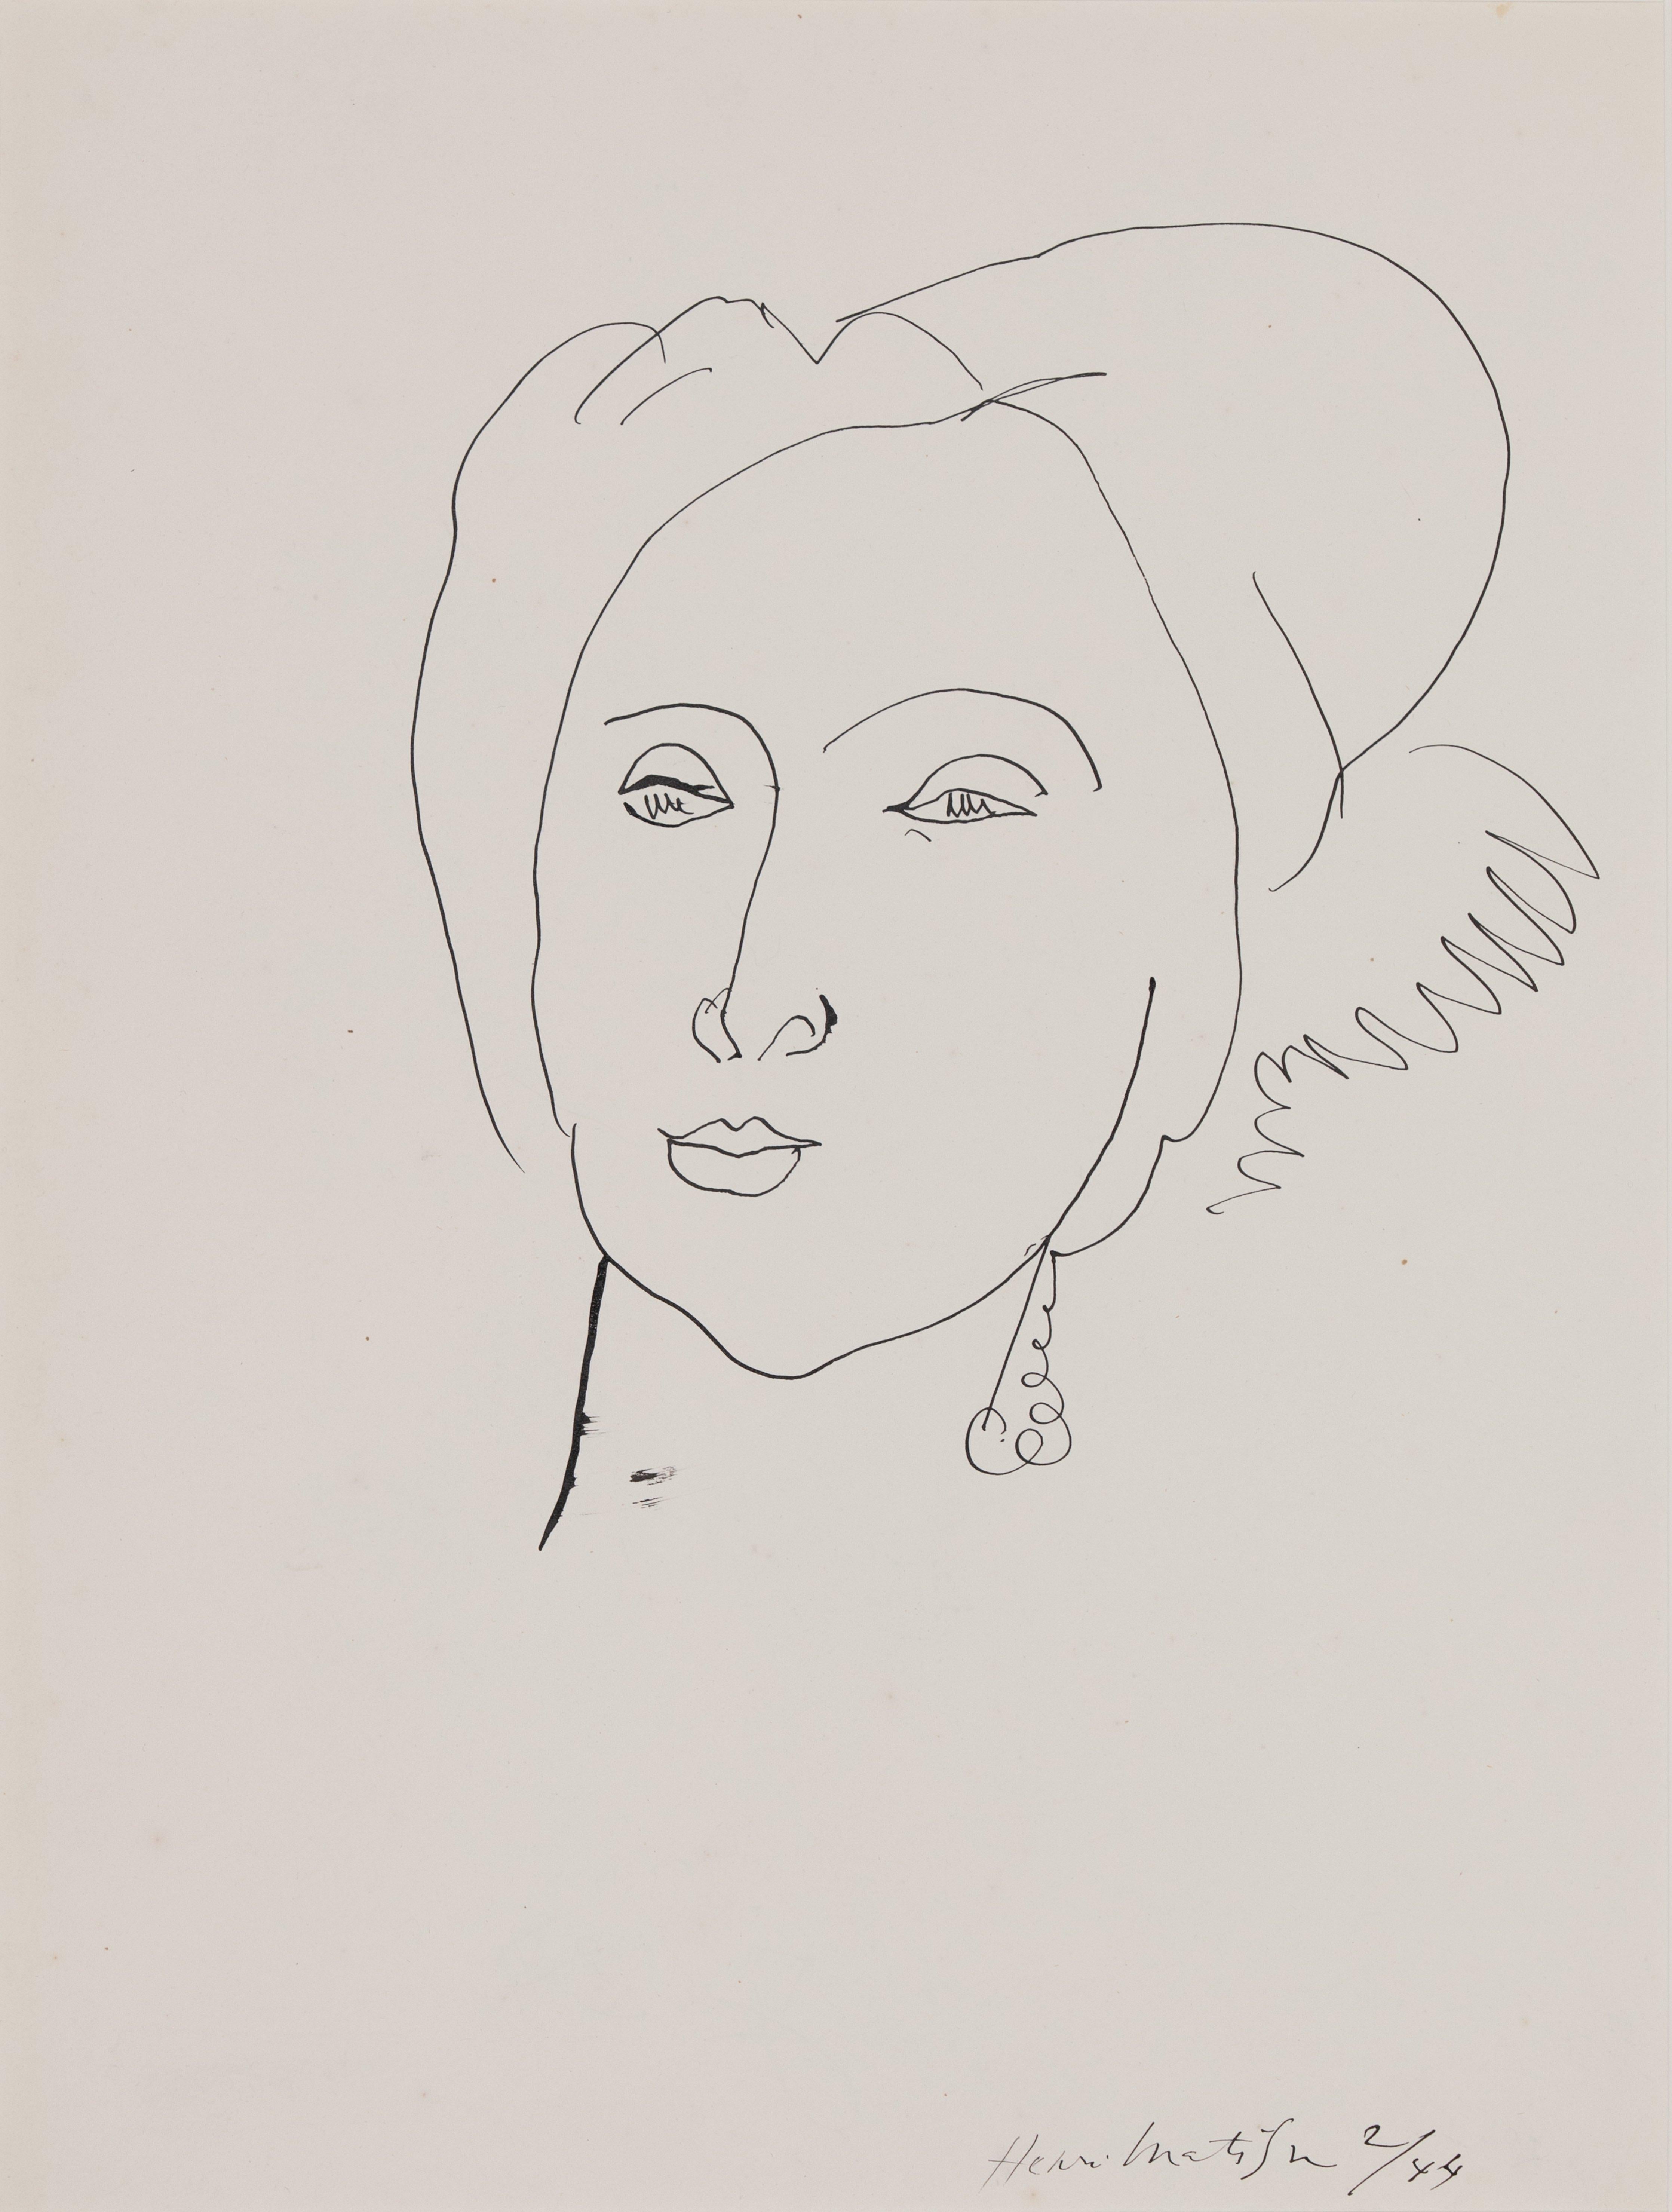 *BITTE BEACHTEN SIE, DASS BRITISCHE KÄUFER NUR 5% MEHRWERTSTEUER AUF DIESEN KAUF ZAHLEN.

Der Turban von Henri Matisse (1869-1954)
Feder und Tusche auf Papier
51,5 x 39 cm (20 ¹/₄ x 15 ³/₈ Zoll)
Signiert und datiert unten rechts, Henri Matisse